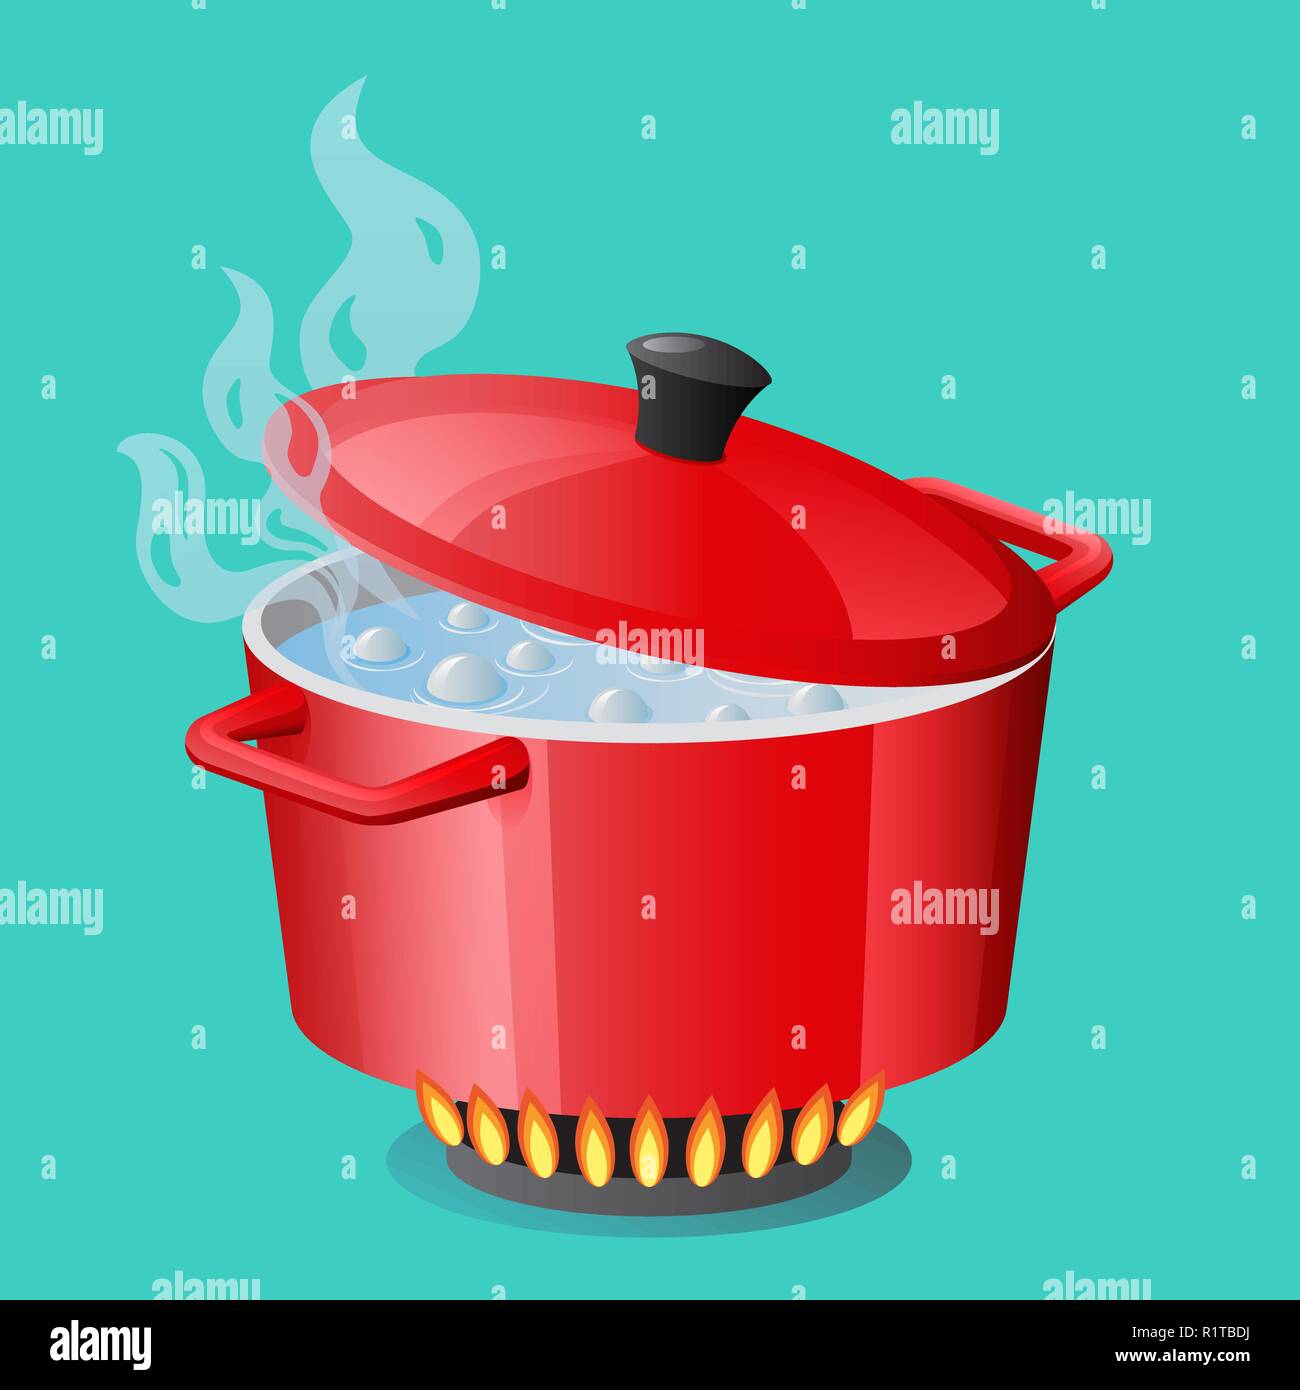 Rote Pfanne, Pfanne, Topf, Kasserolle, Kocher, stewpan mit kochendem Wasser und geschlossener Pfanne Deckel Vektor isoliert Kochen Symbol Stock Vektor